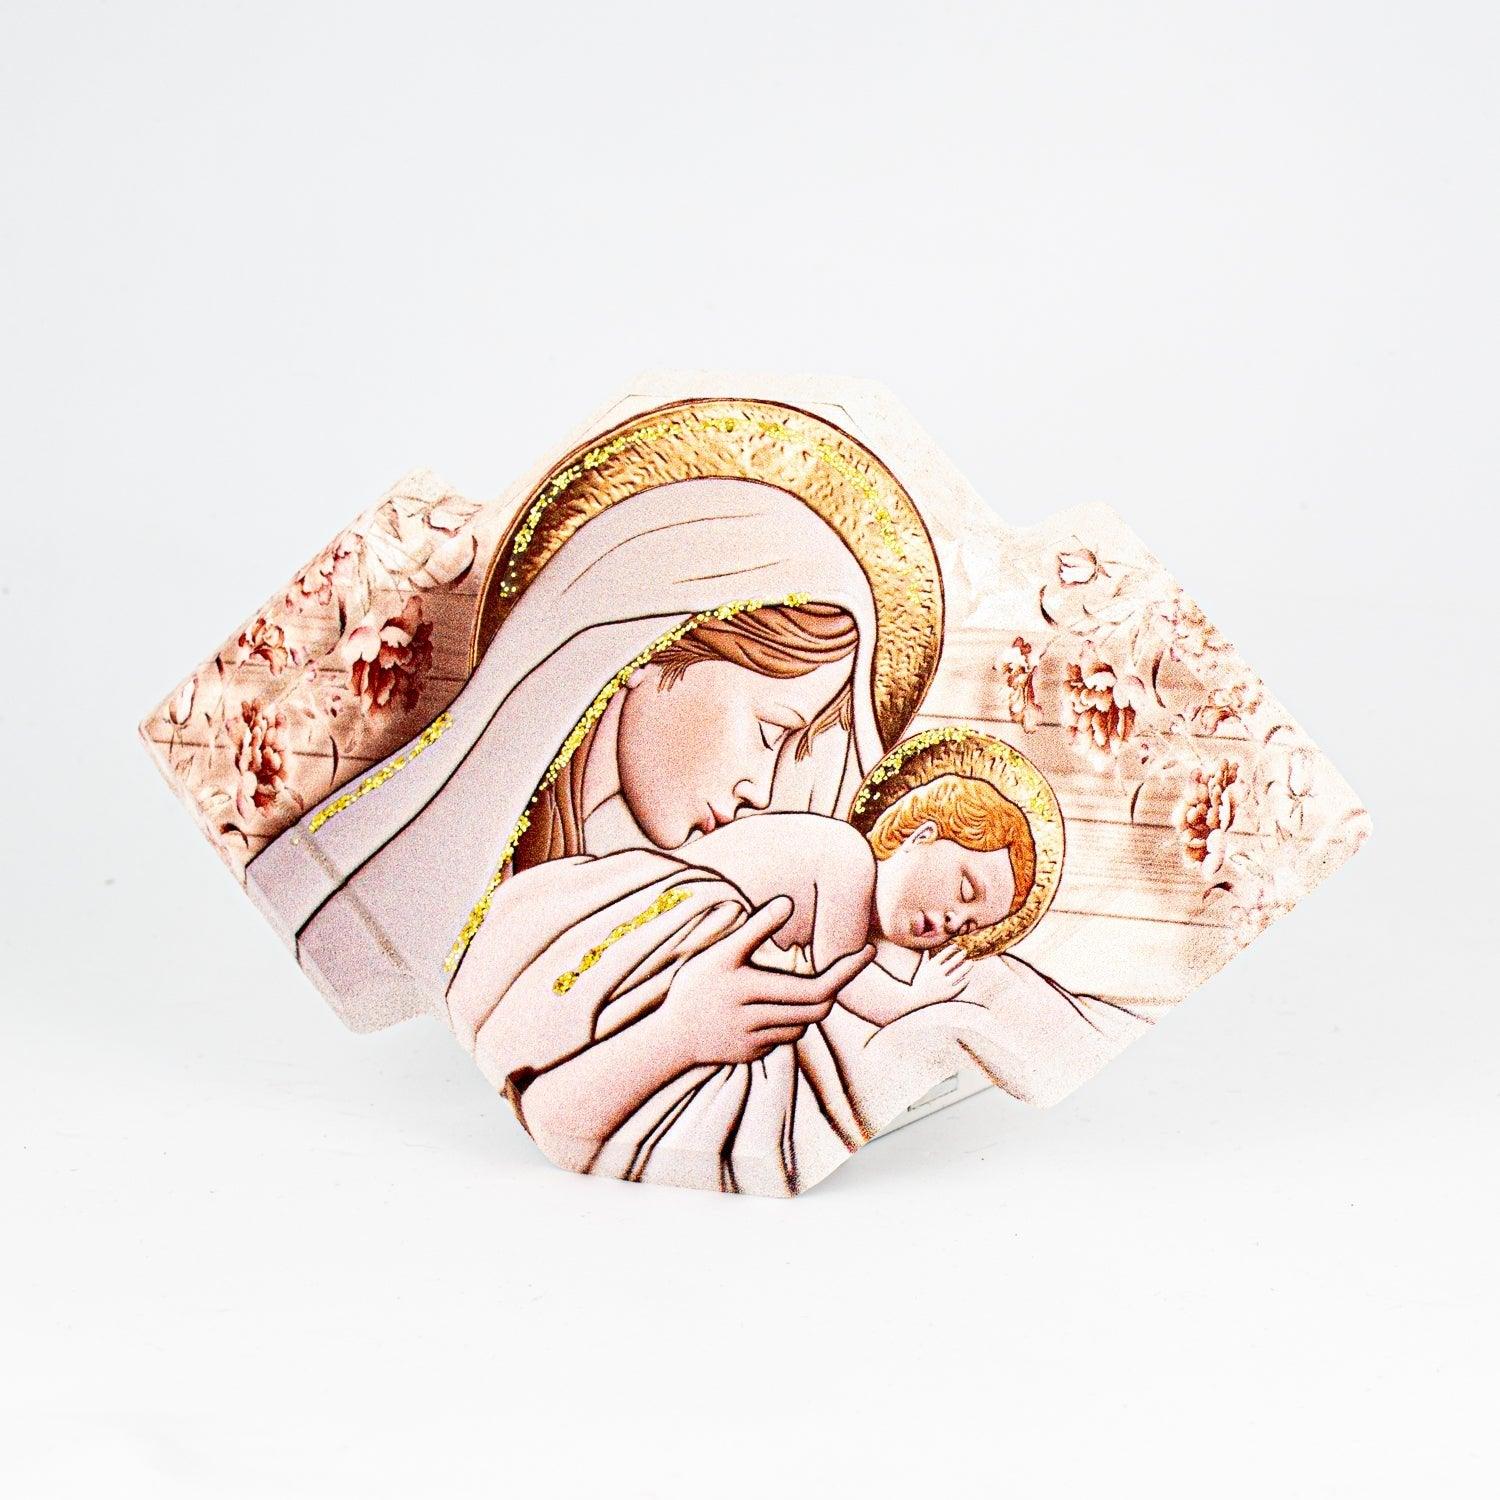 Bomboniera Icona Sacra Maternità Glitterata su Legno Sagomato da Appoggio e Muro Icone Sacre Albalu Bomboniere Maternità 3 18x11 cm 